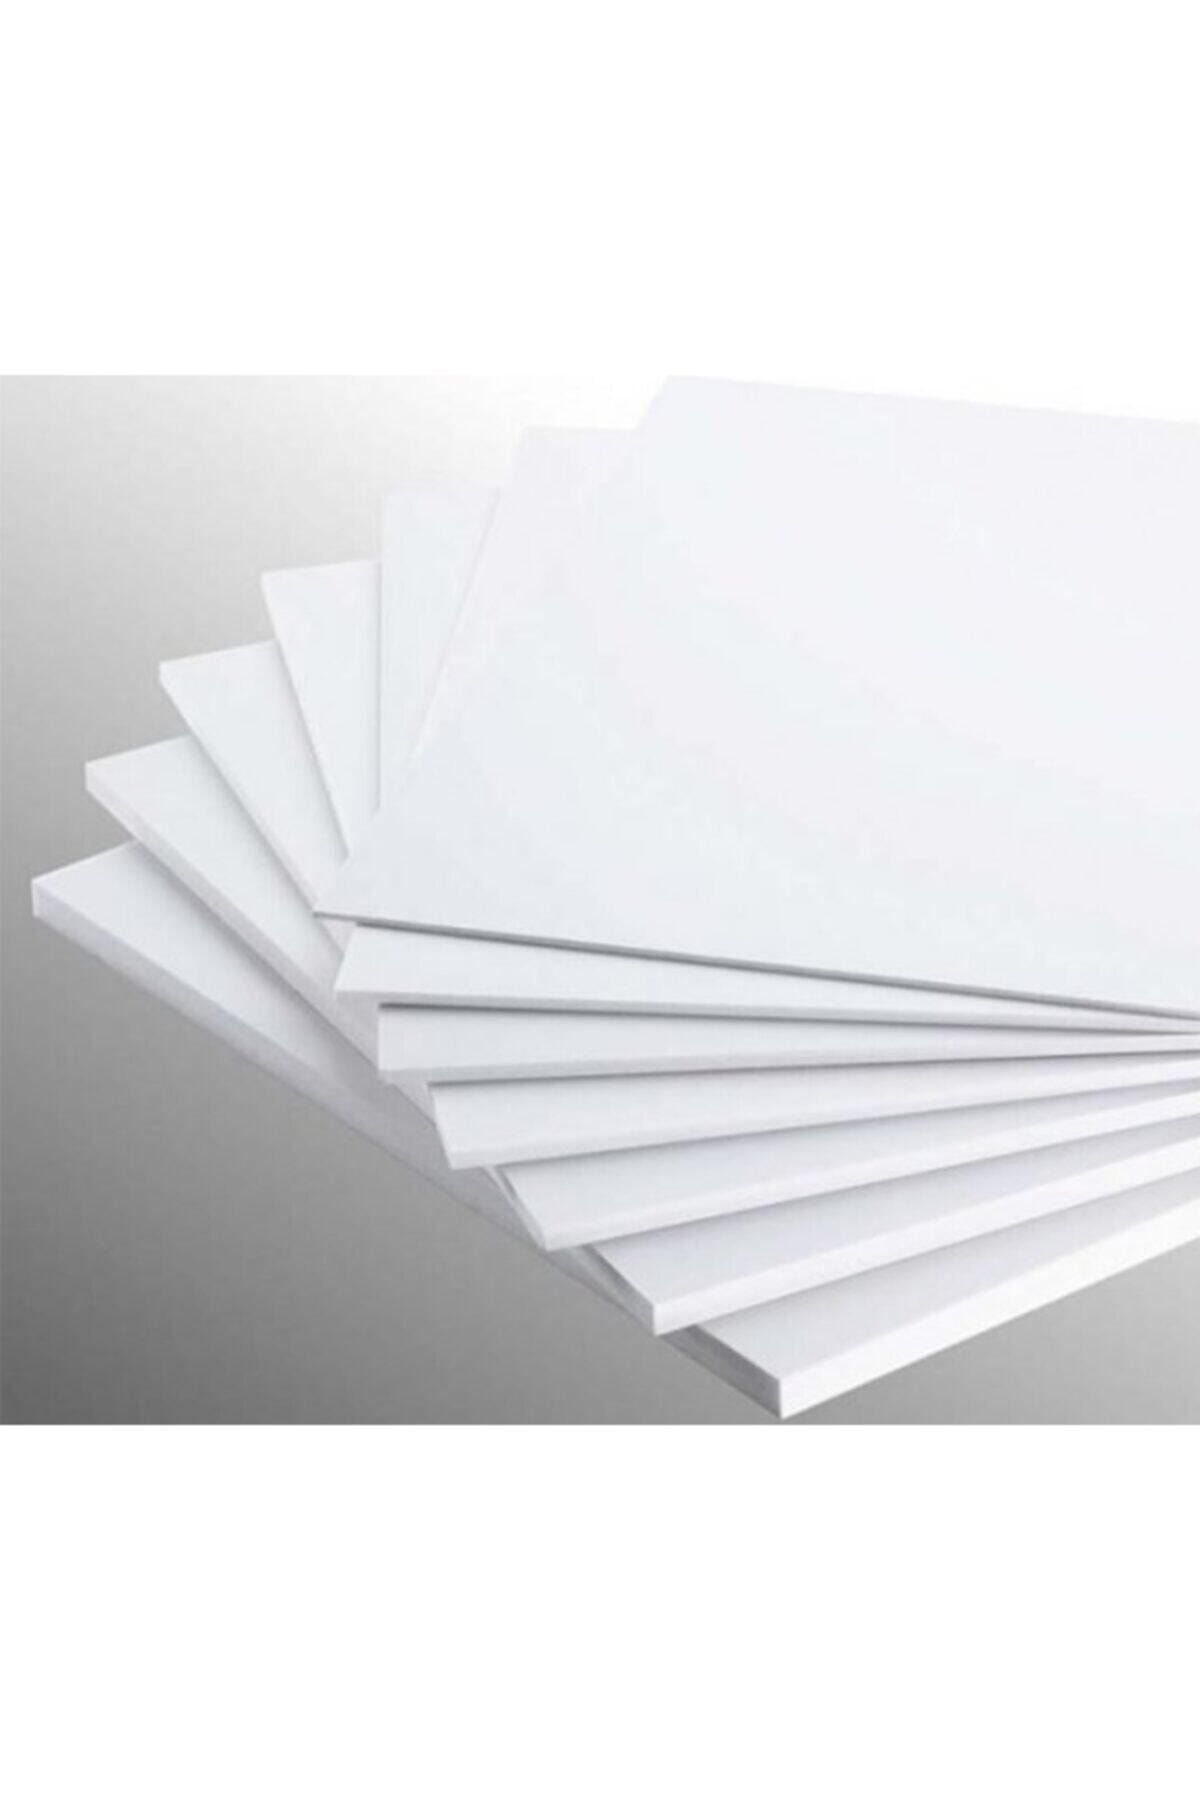 Bigpoint Köpüklü Maket Kartonu 3 Mm 50x70 Beyaz 5'li Paket